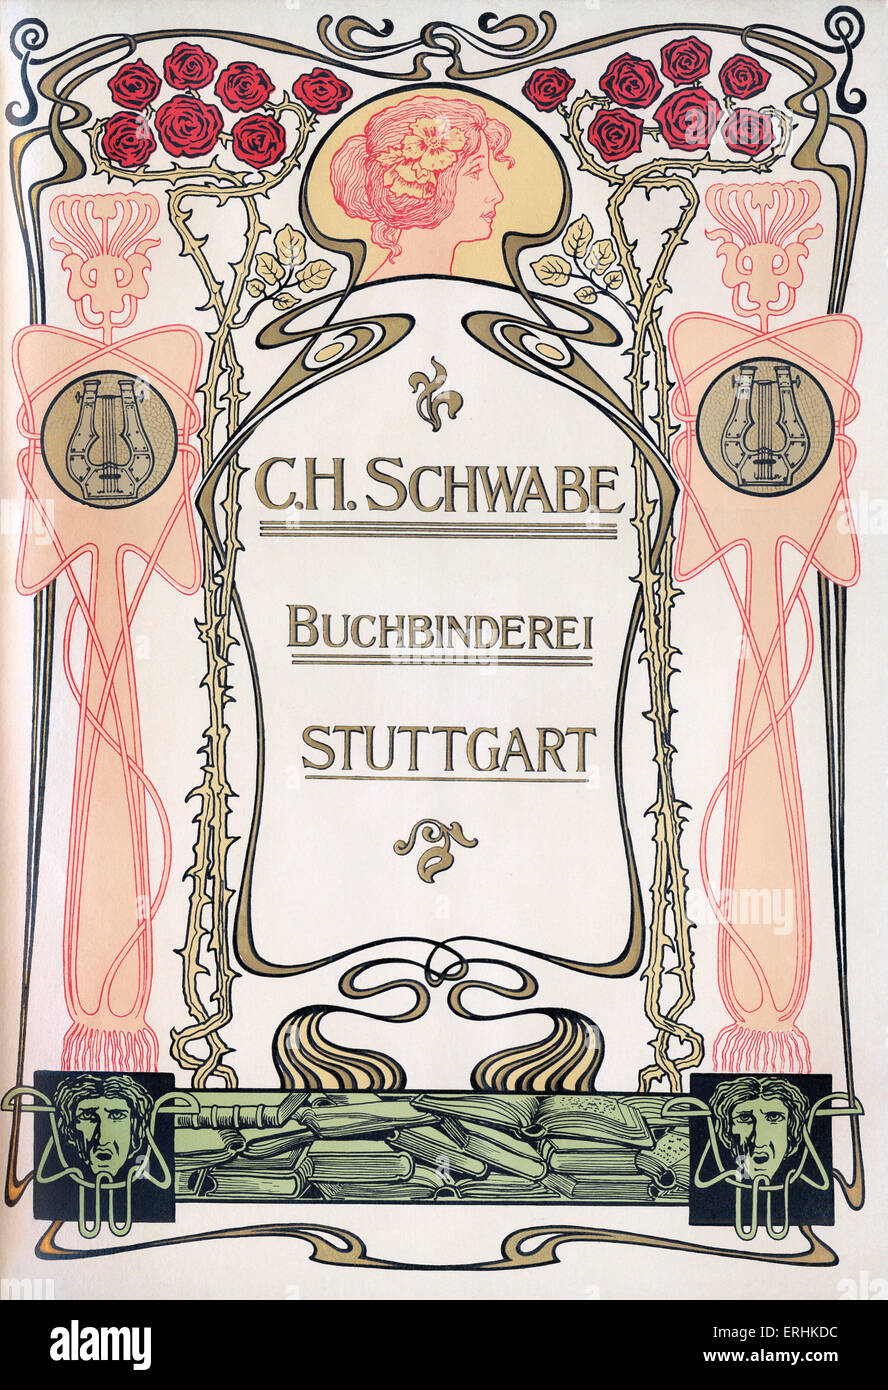 Bookbinder / bookbinding  firm  advertisement from 1902 printers ' catalogue. C H Schwabe, Buchbinderei, Stuttgart.    Gold Stock Photo